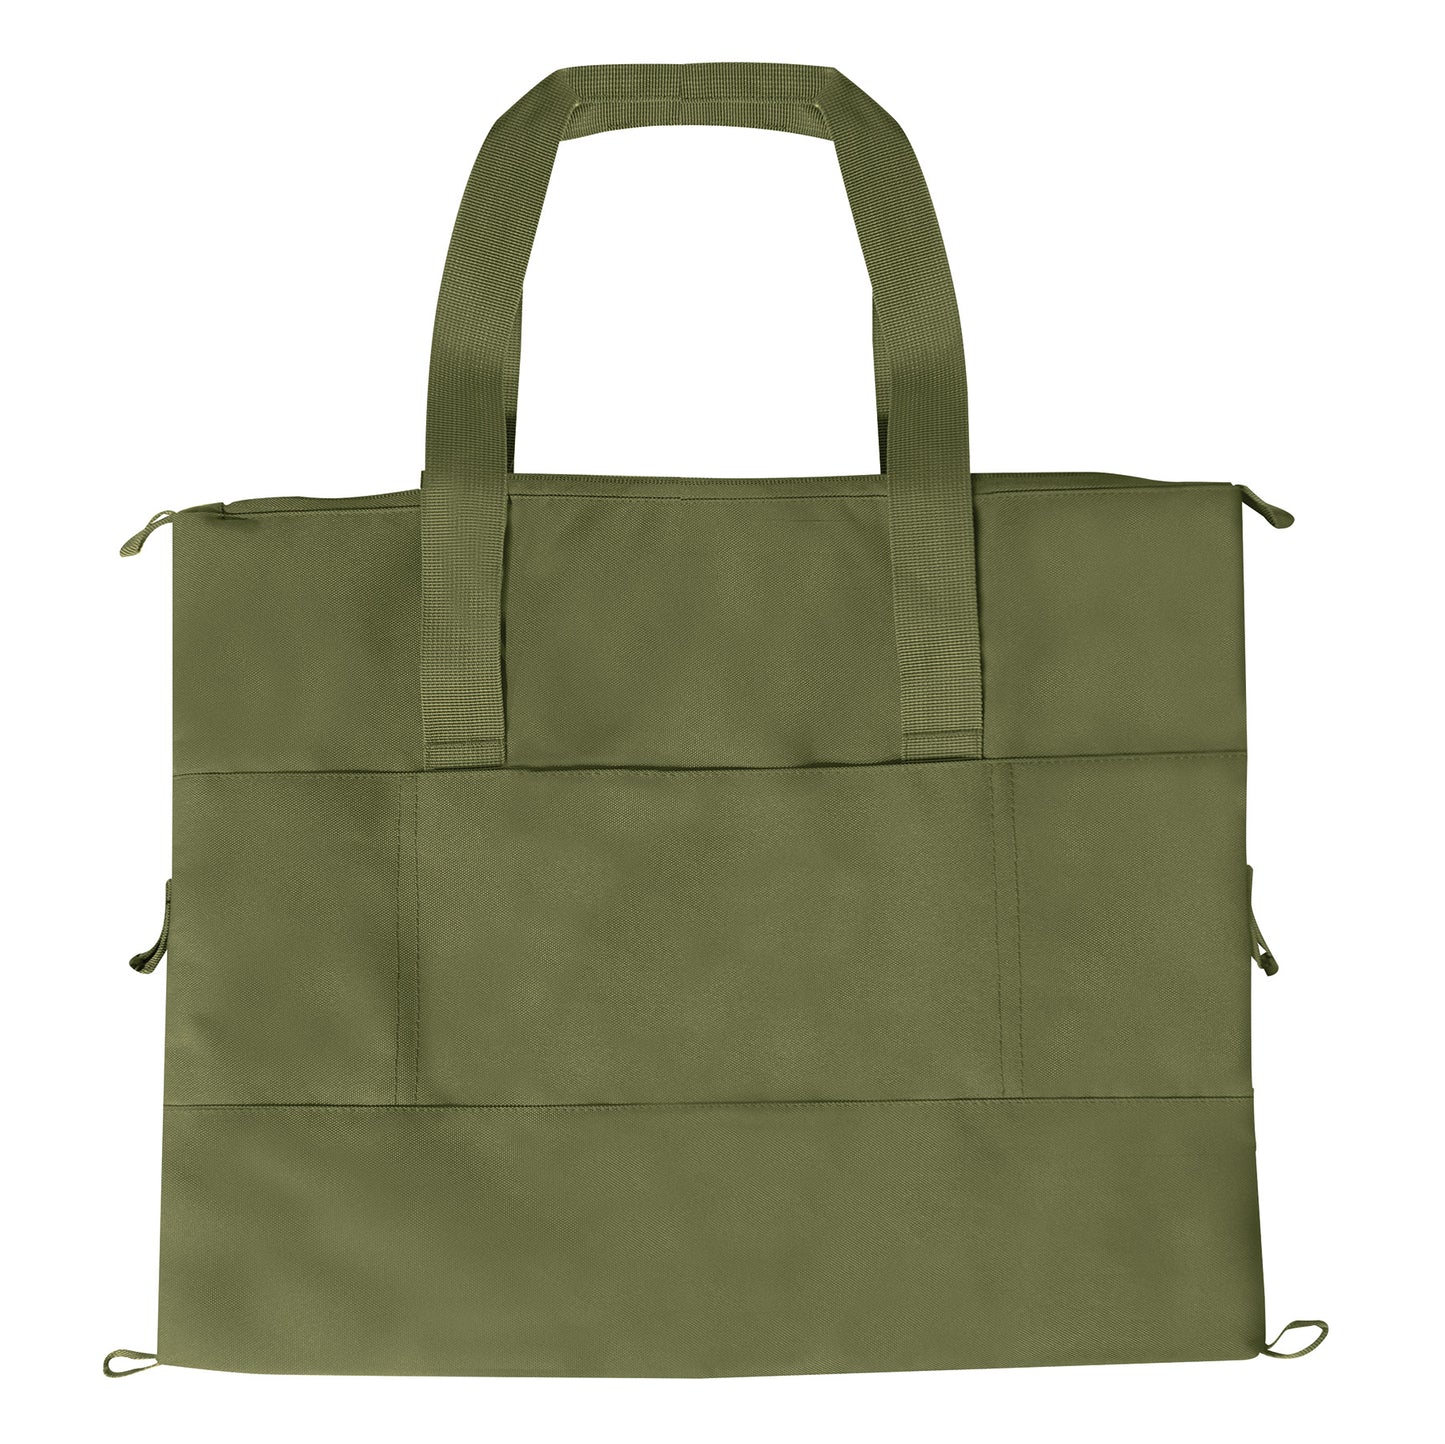 Convertible Cooler / Tote Bag